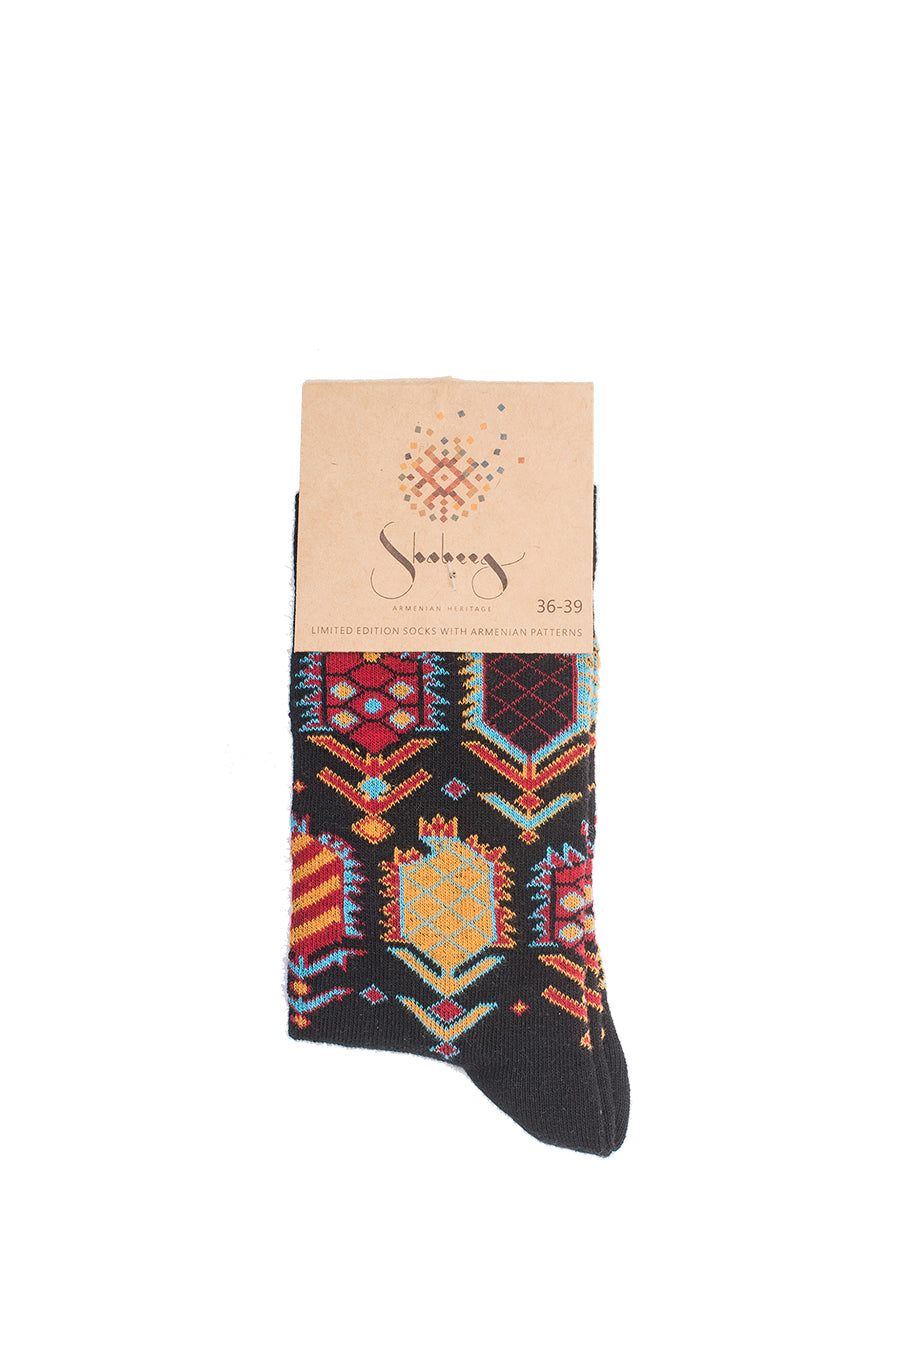 Shabeeg Carpet Print Socks